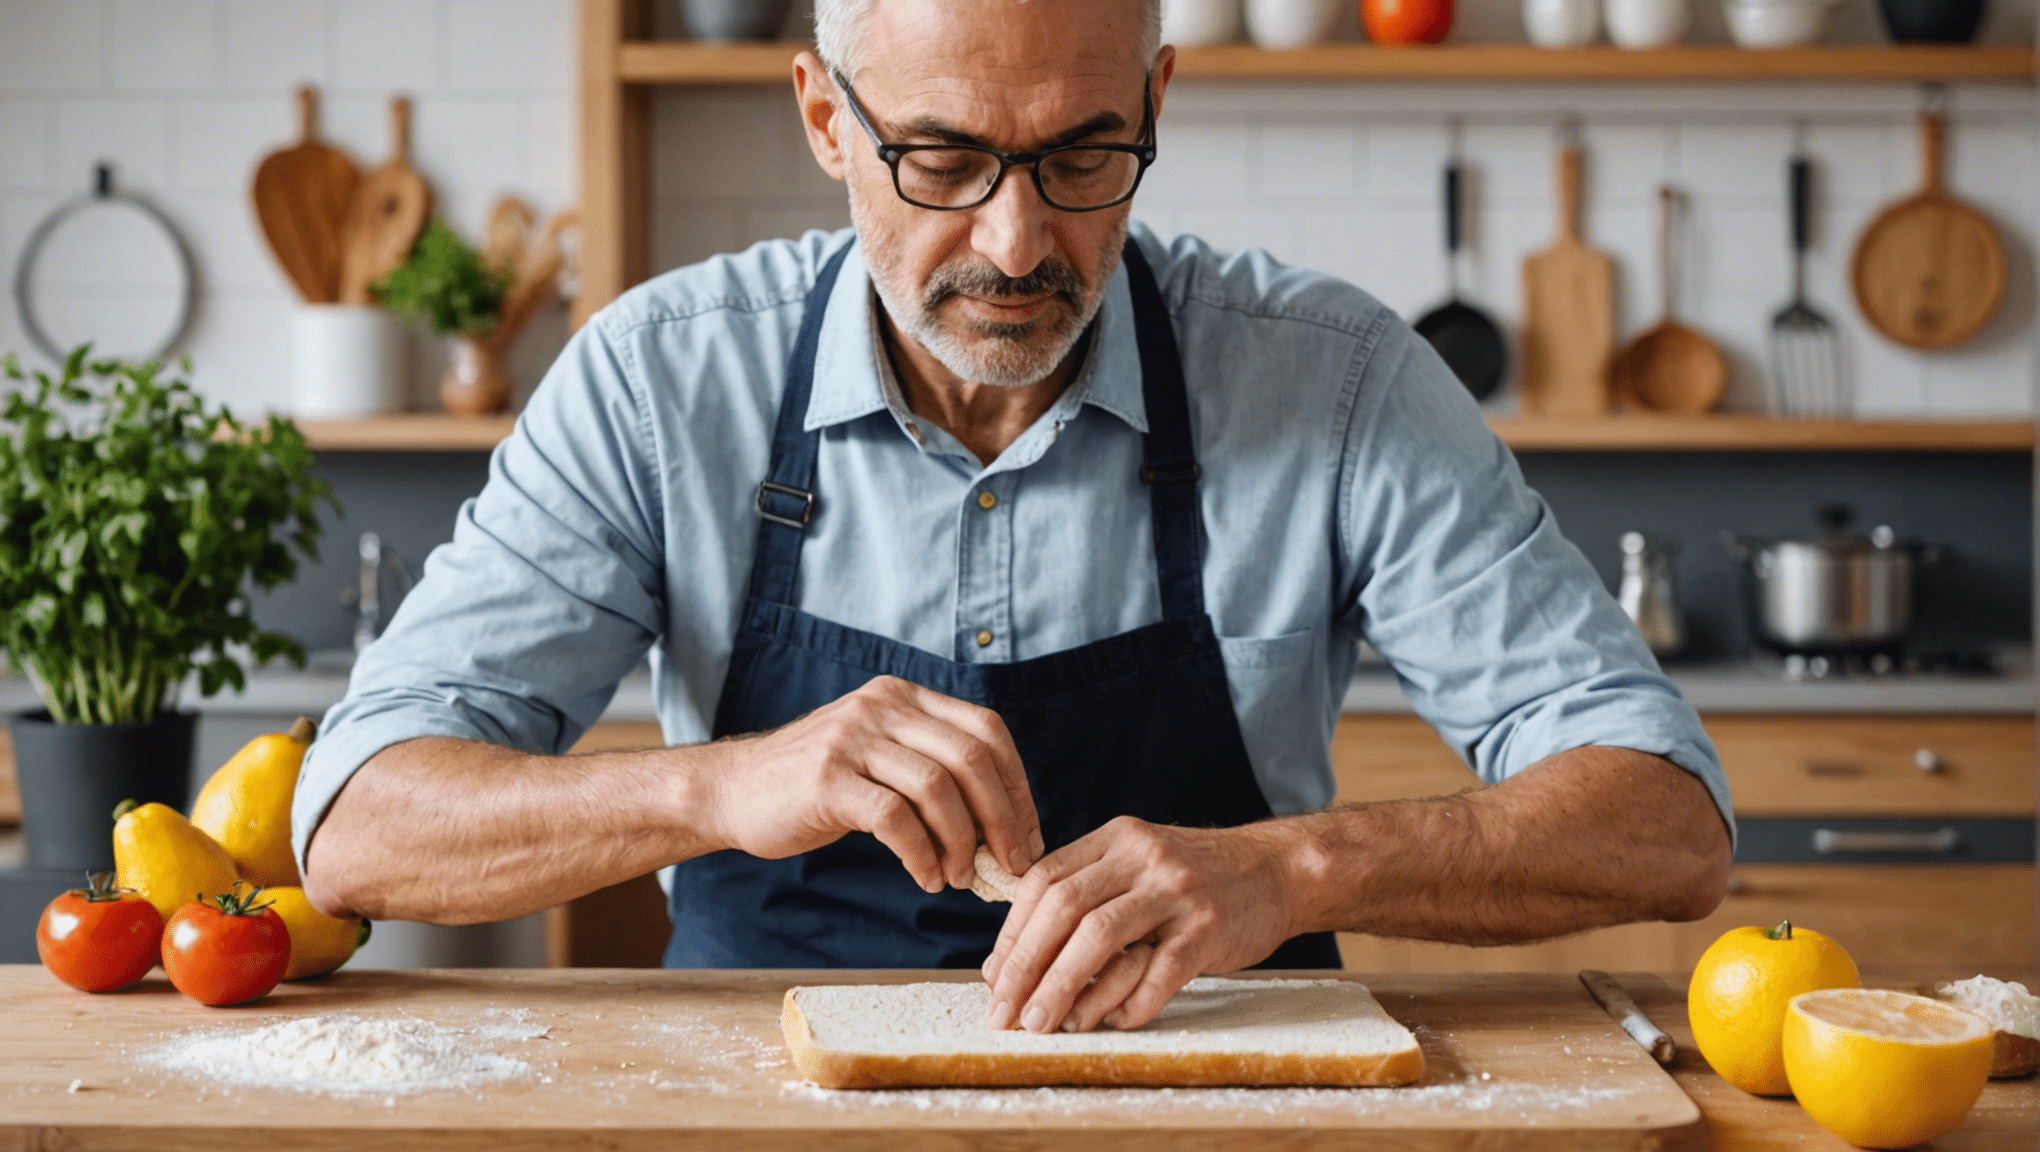 découvrez comment apprendre à faire son pain maison avec nos conseils pratiques et recettes simples. réalisez votre propre pain délicieux et nutritif à la maison dès aujourd'hui !